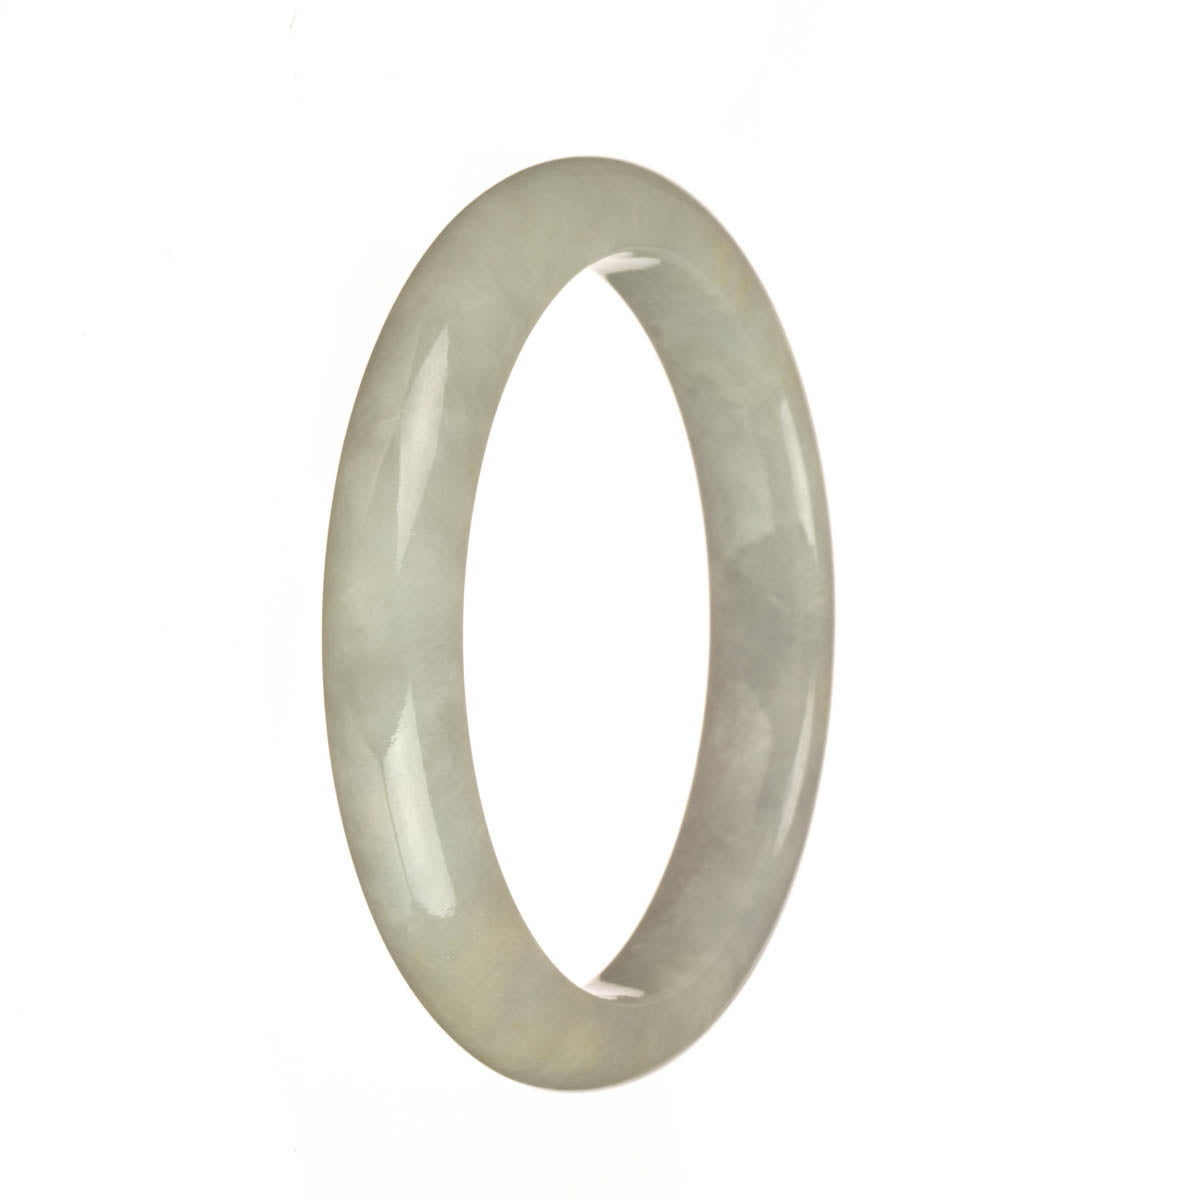 58.1mm Greyish White Jade Bangle Bracelet